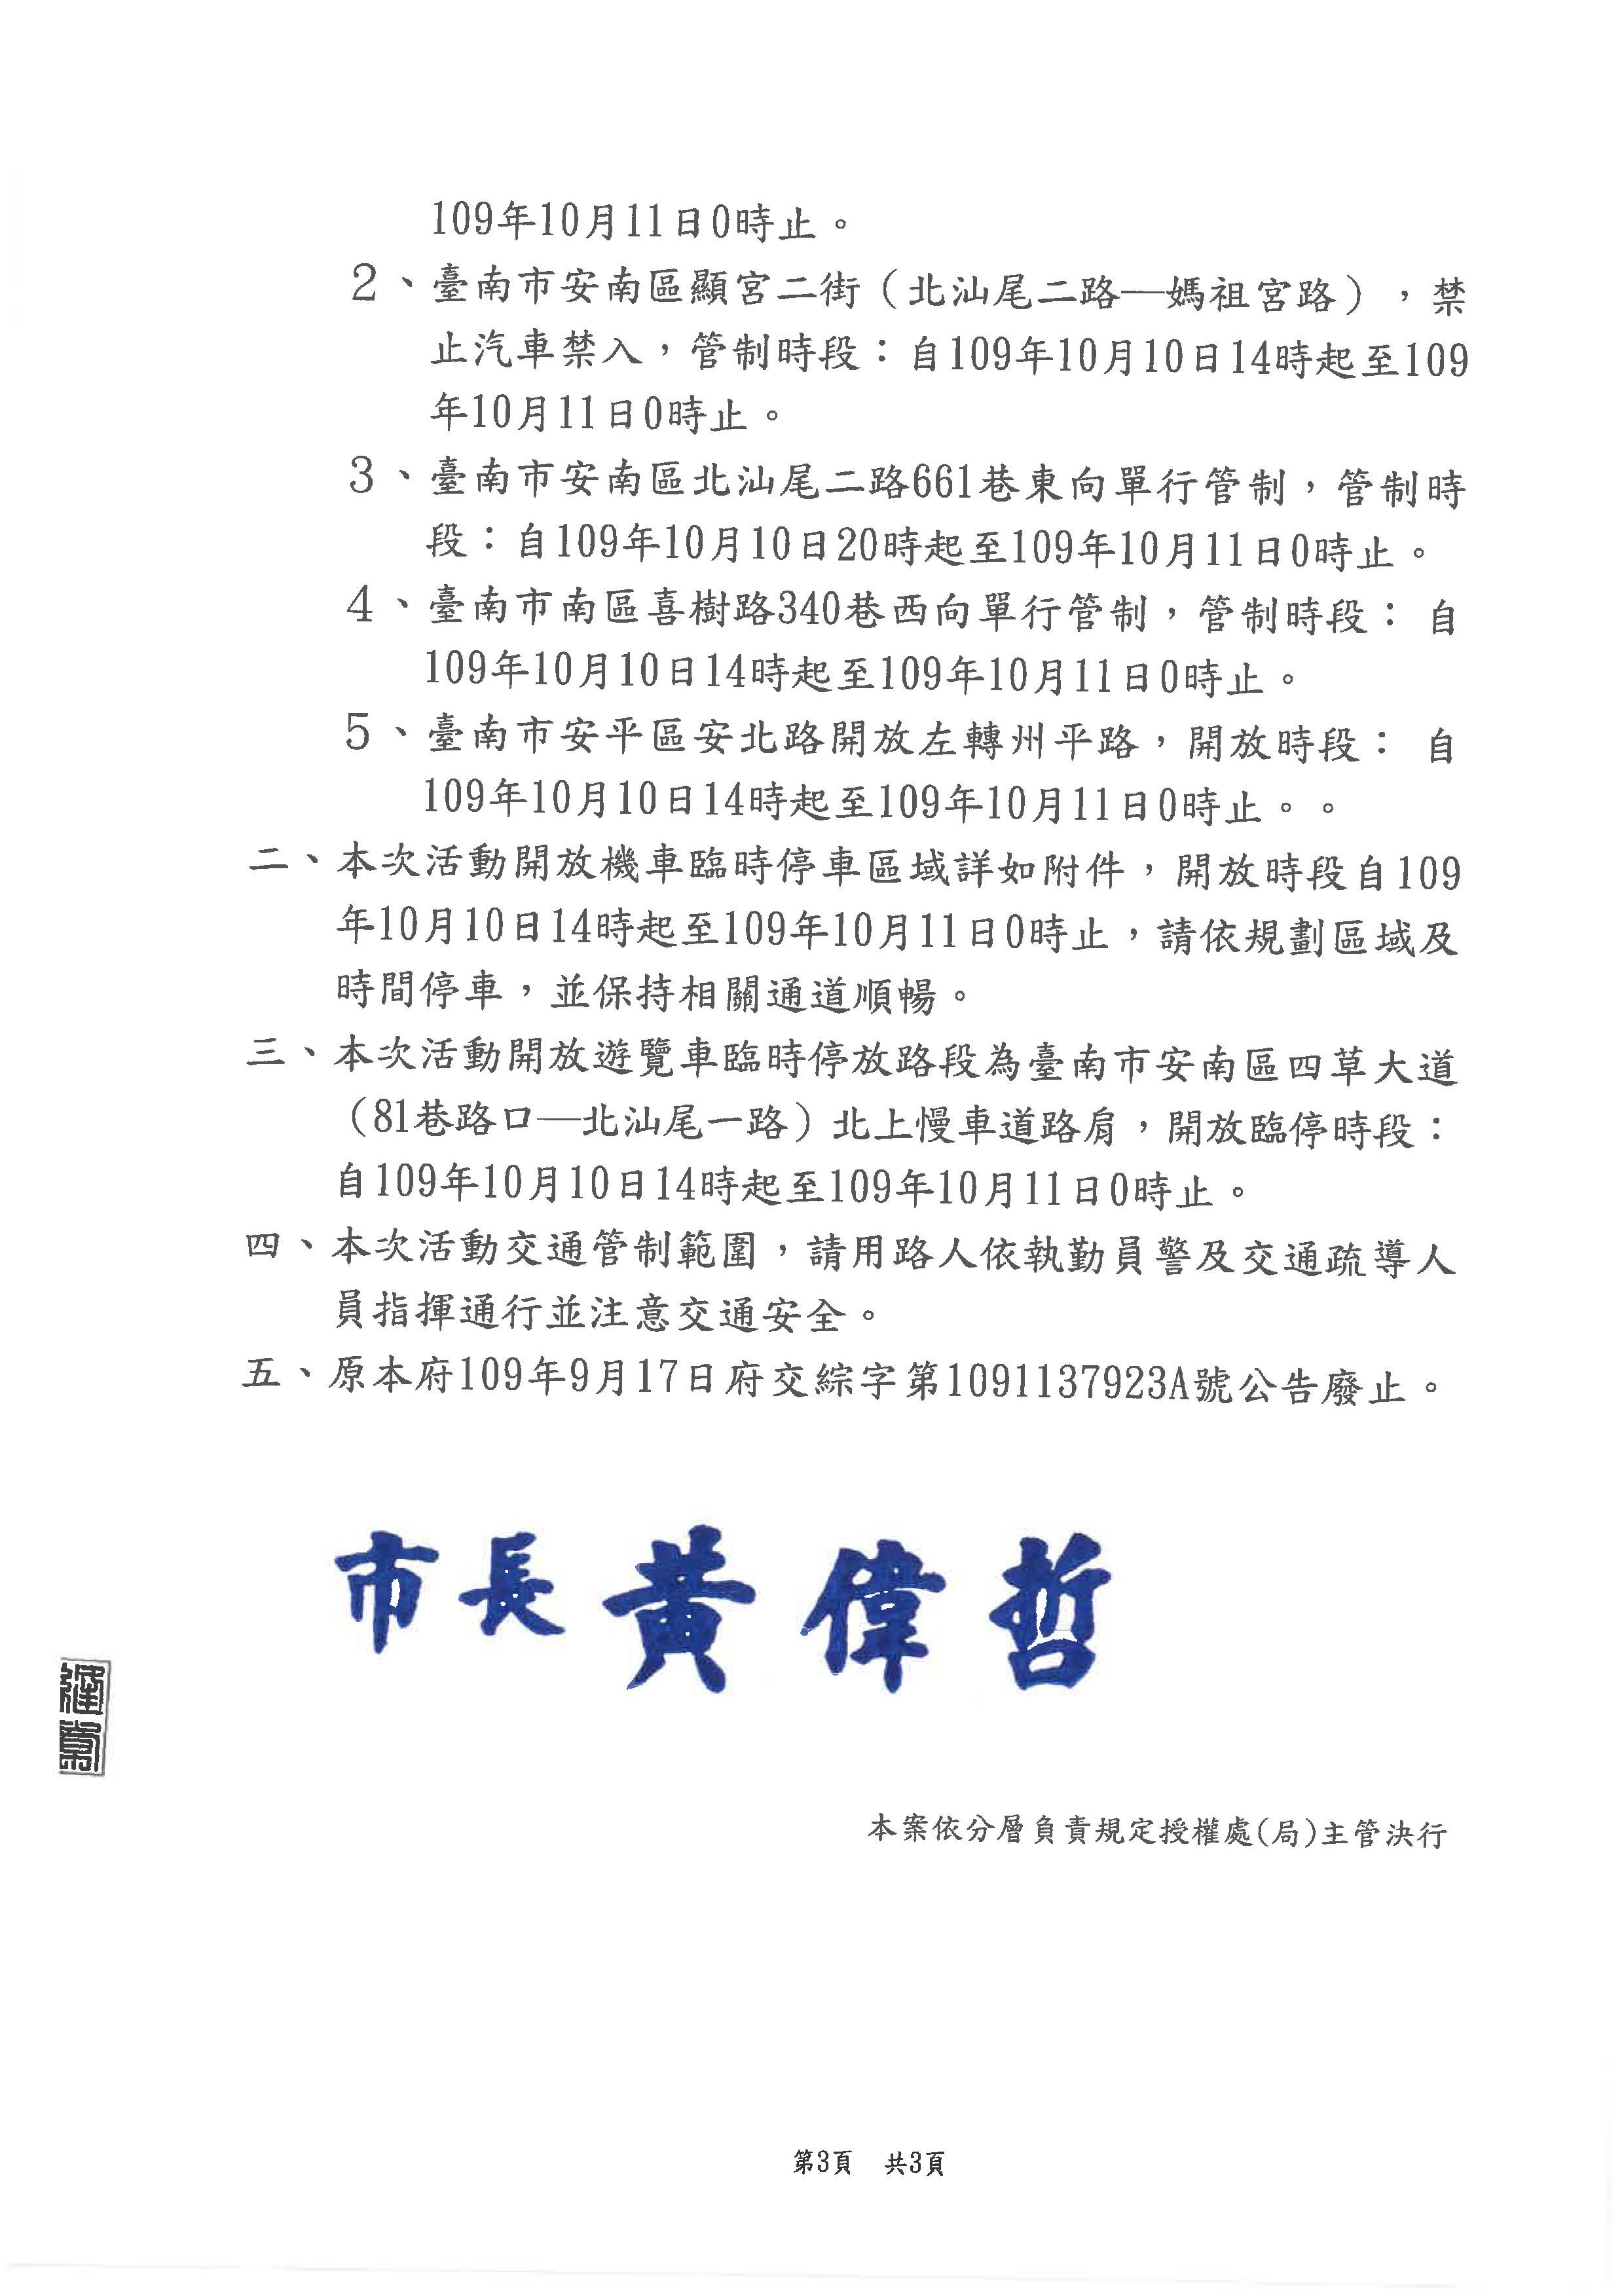 更正公告2020國慶焰火在臺南活動交通管制頁面3